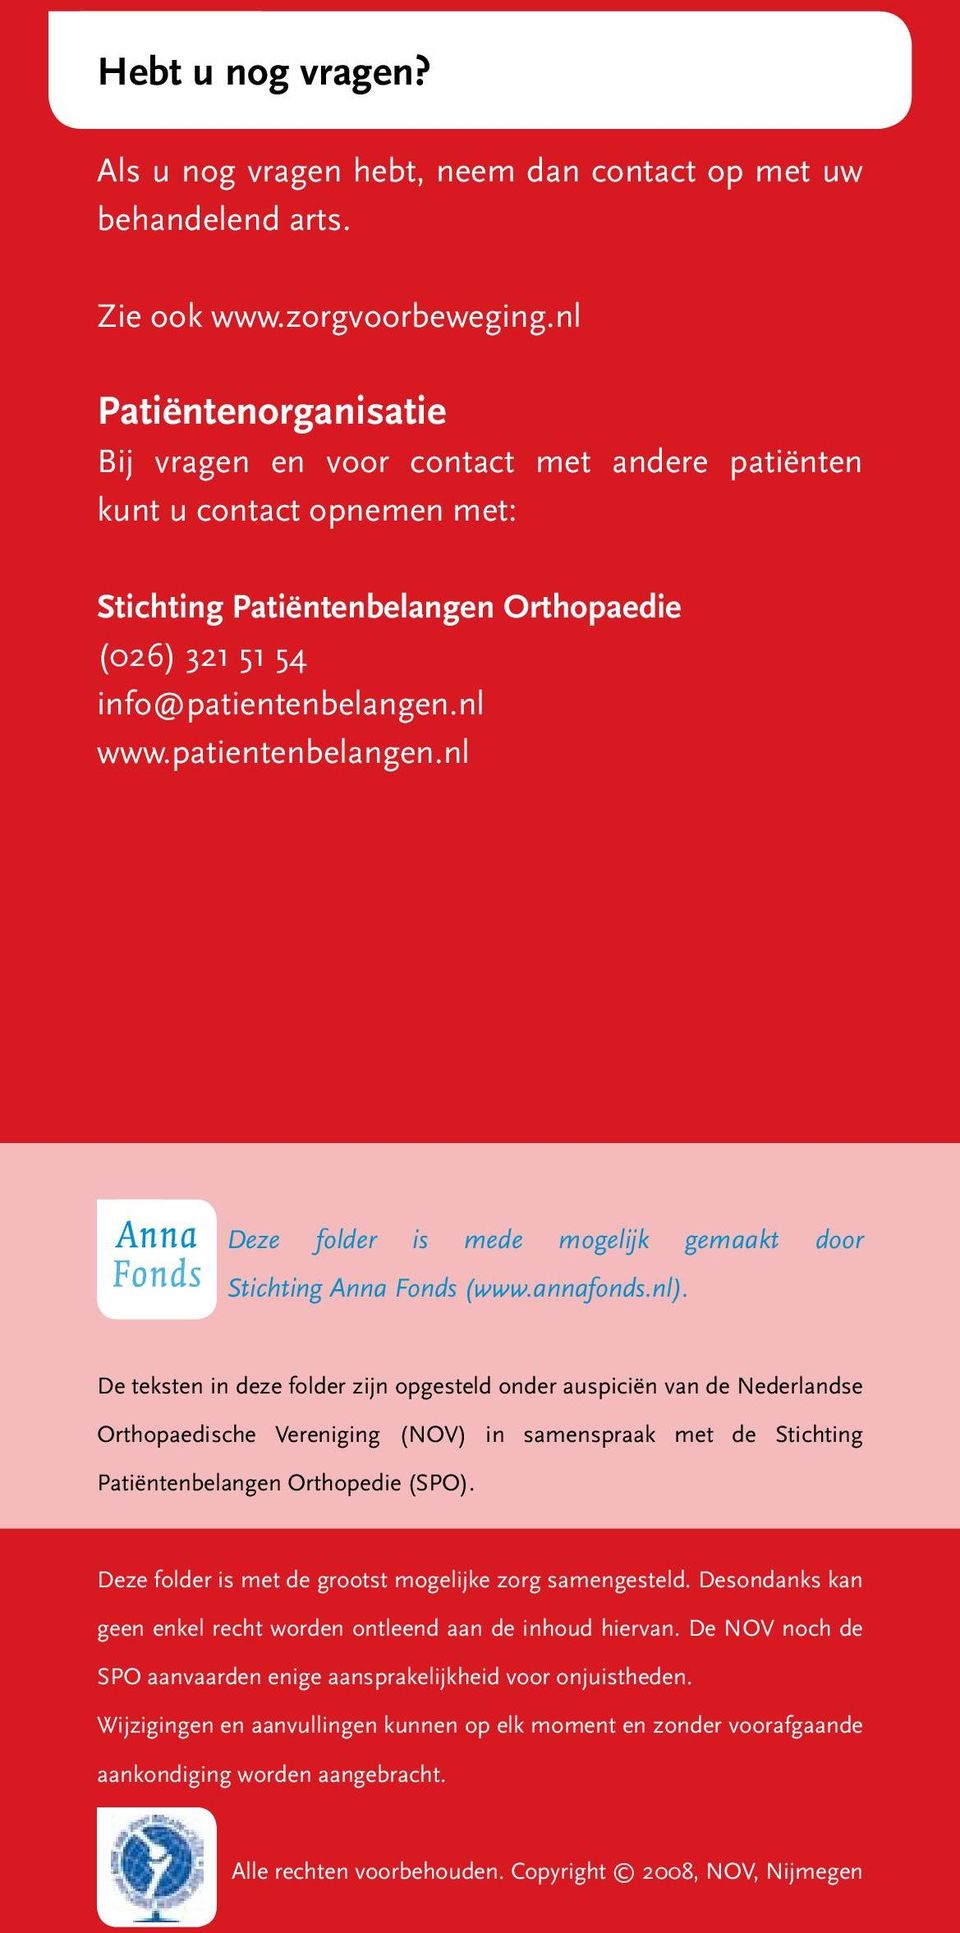 patientenbelangen.nl Deze folder is mede mogelijk gemaakt door Stichting Anna Fonds (www.annafonds.nl).